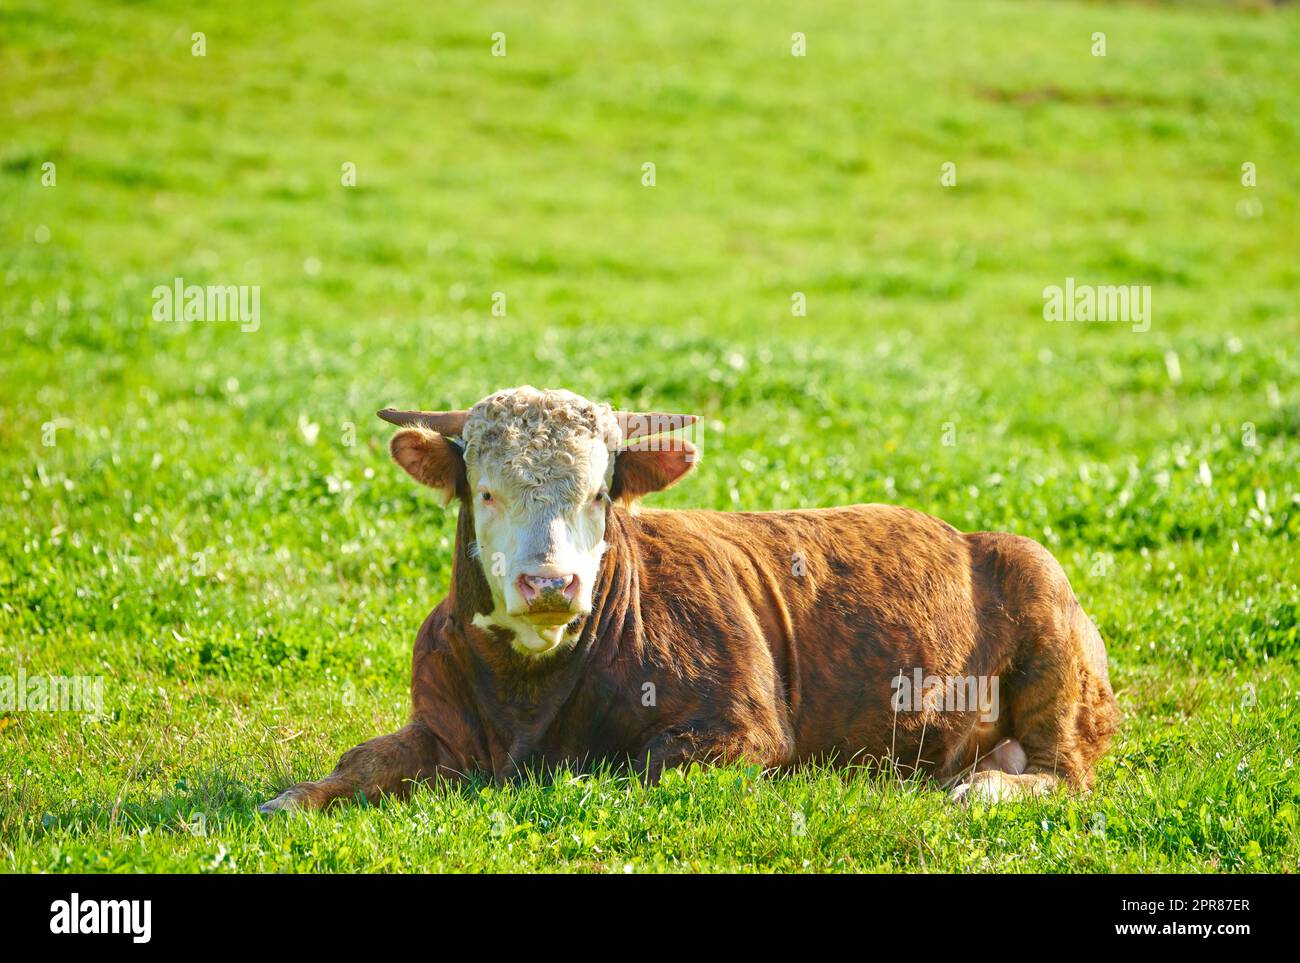 Una mucca seduto su un campo verde nella campagna rurale con spazio fotocopie. Allevamento e allevamento di bovini in un'azienda agricola destinata all'industria della carne bovina e lattiero-casearia. Paesaggio di un animale su pascoli o pascoli Foto Stock